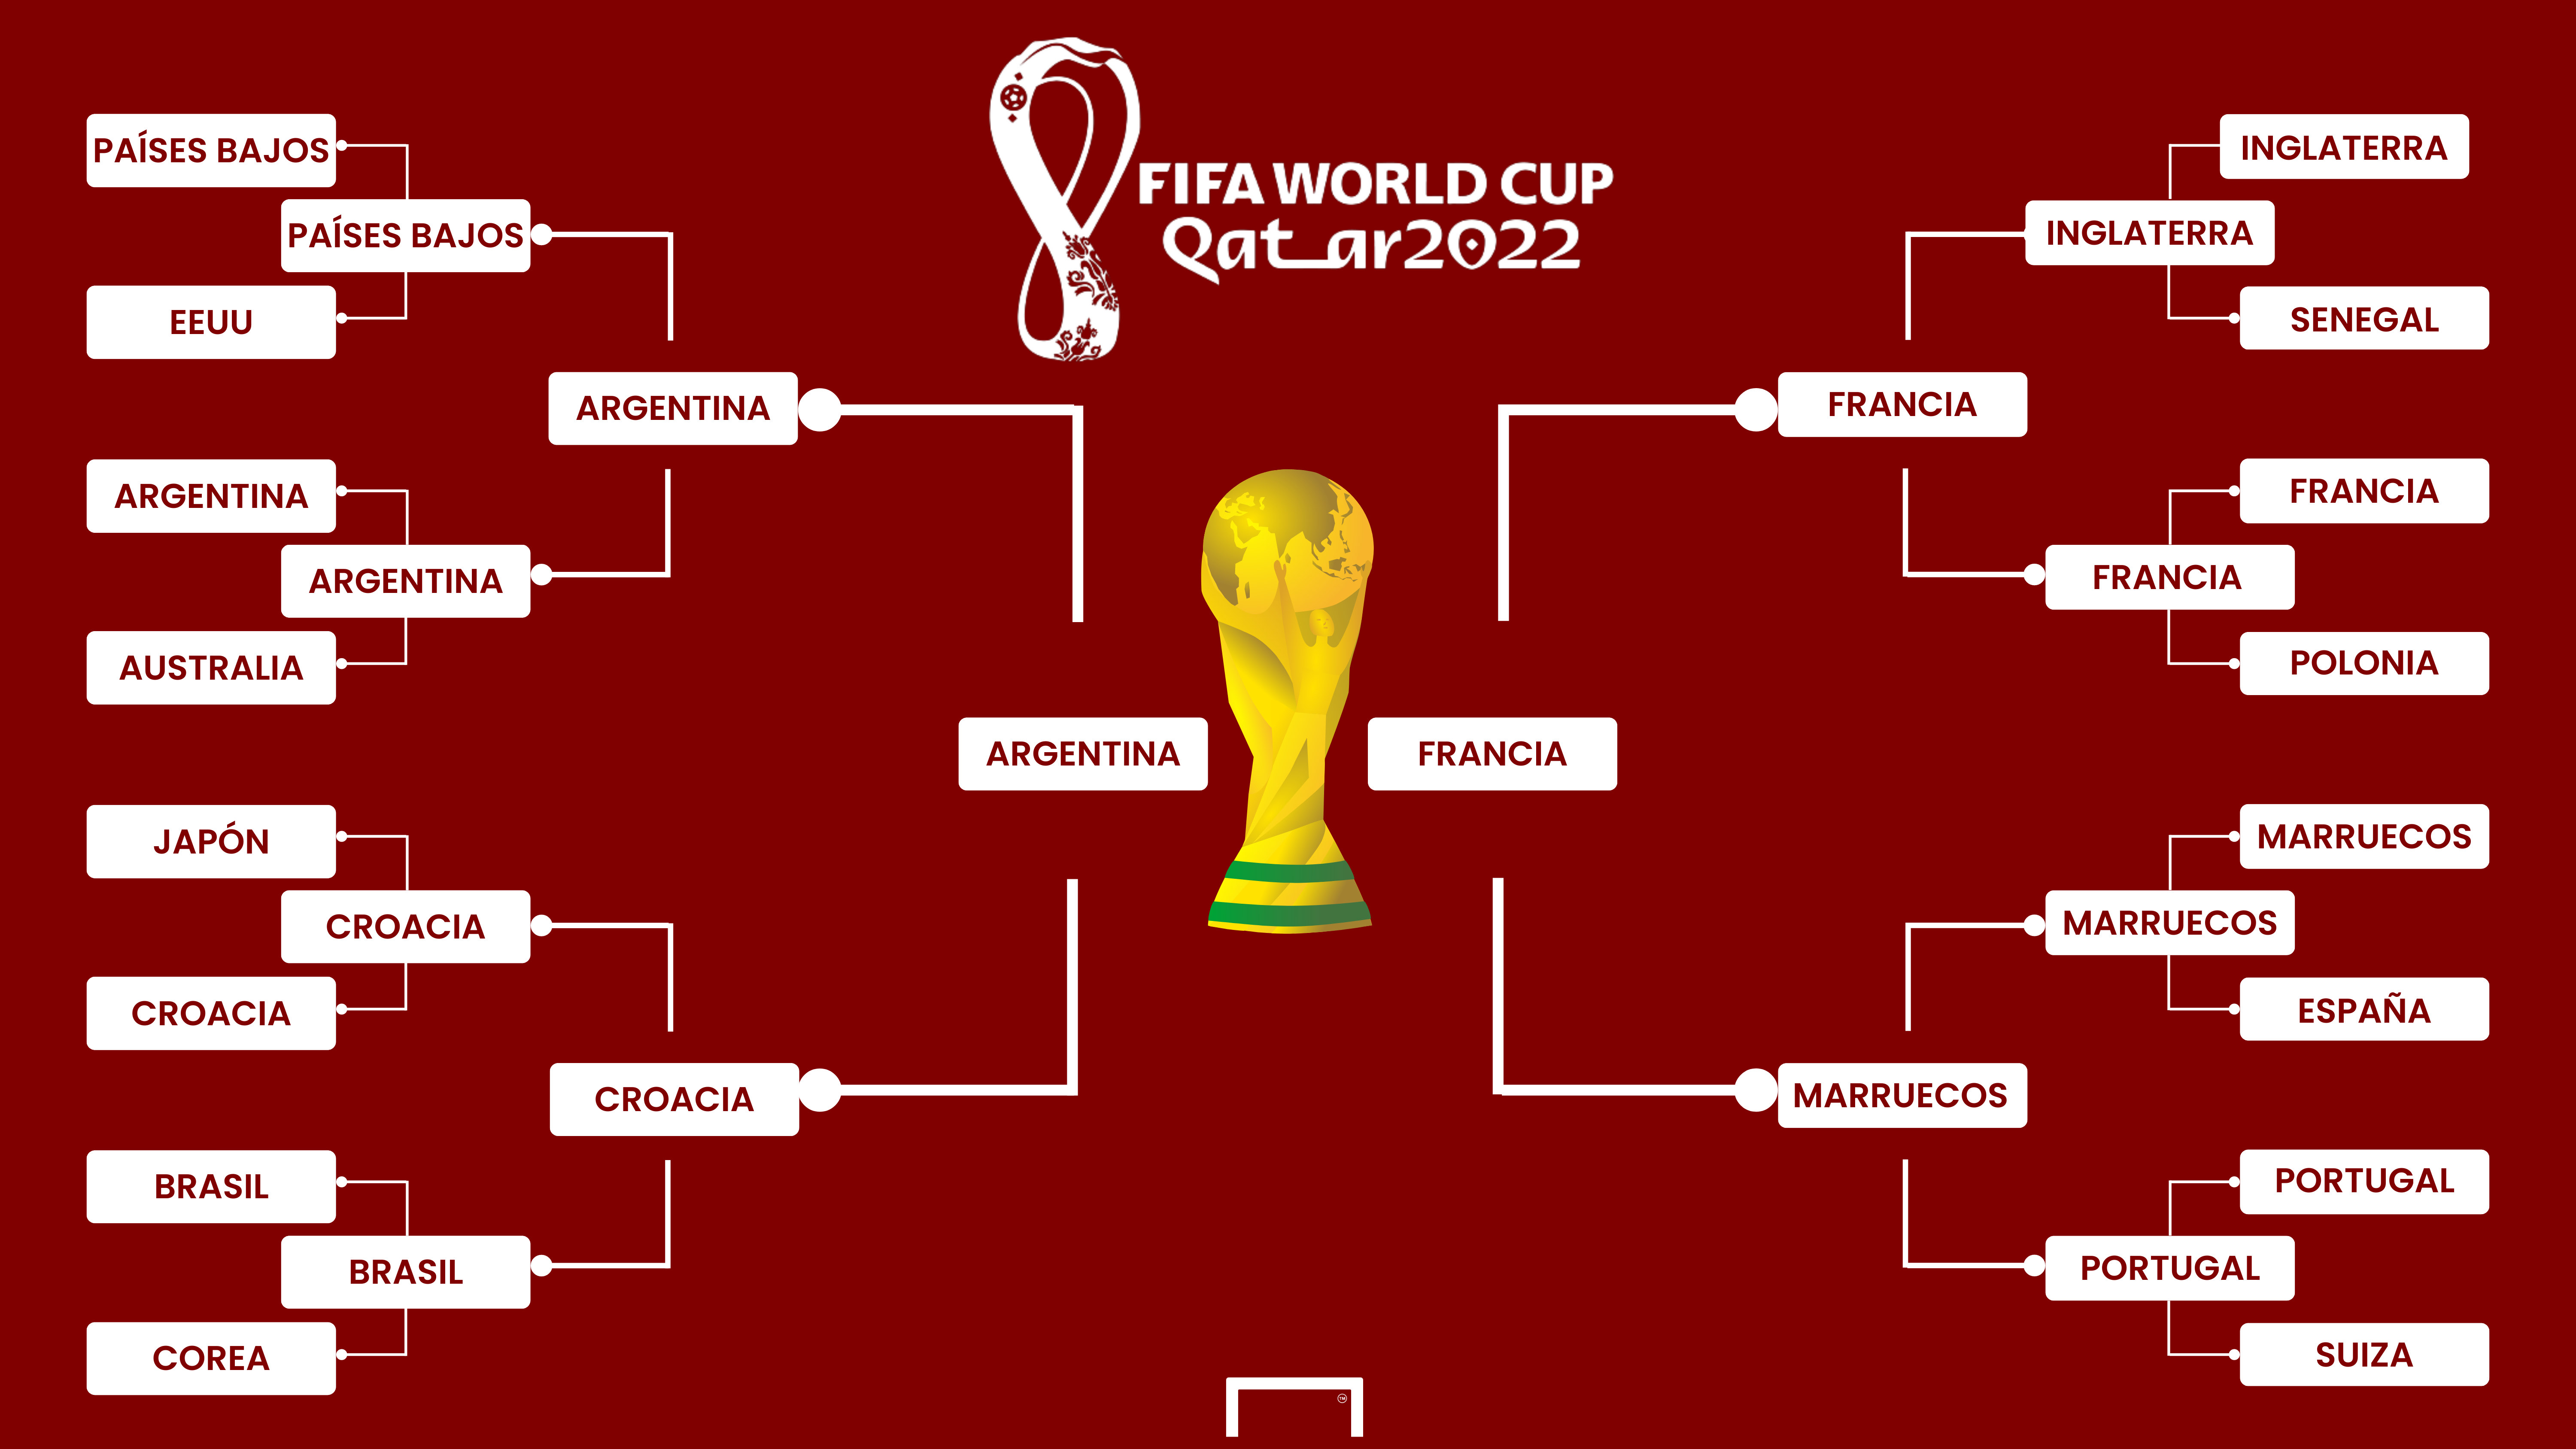 Mundial de Clubes 2020: llaves y enfrentamientos definidos del torneo - FOTO